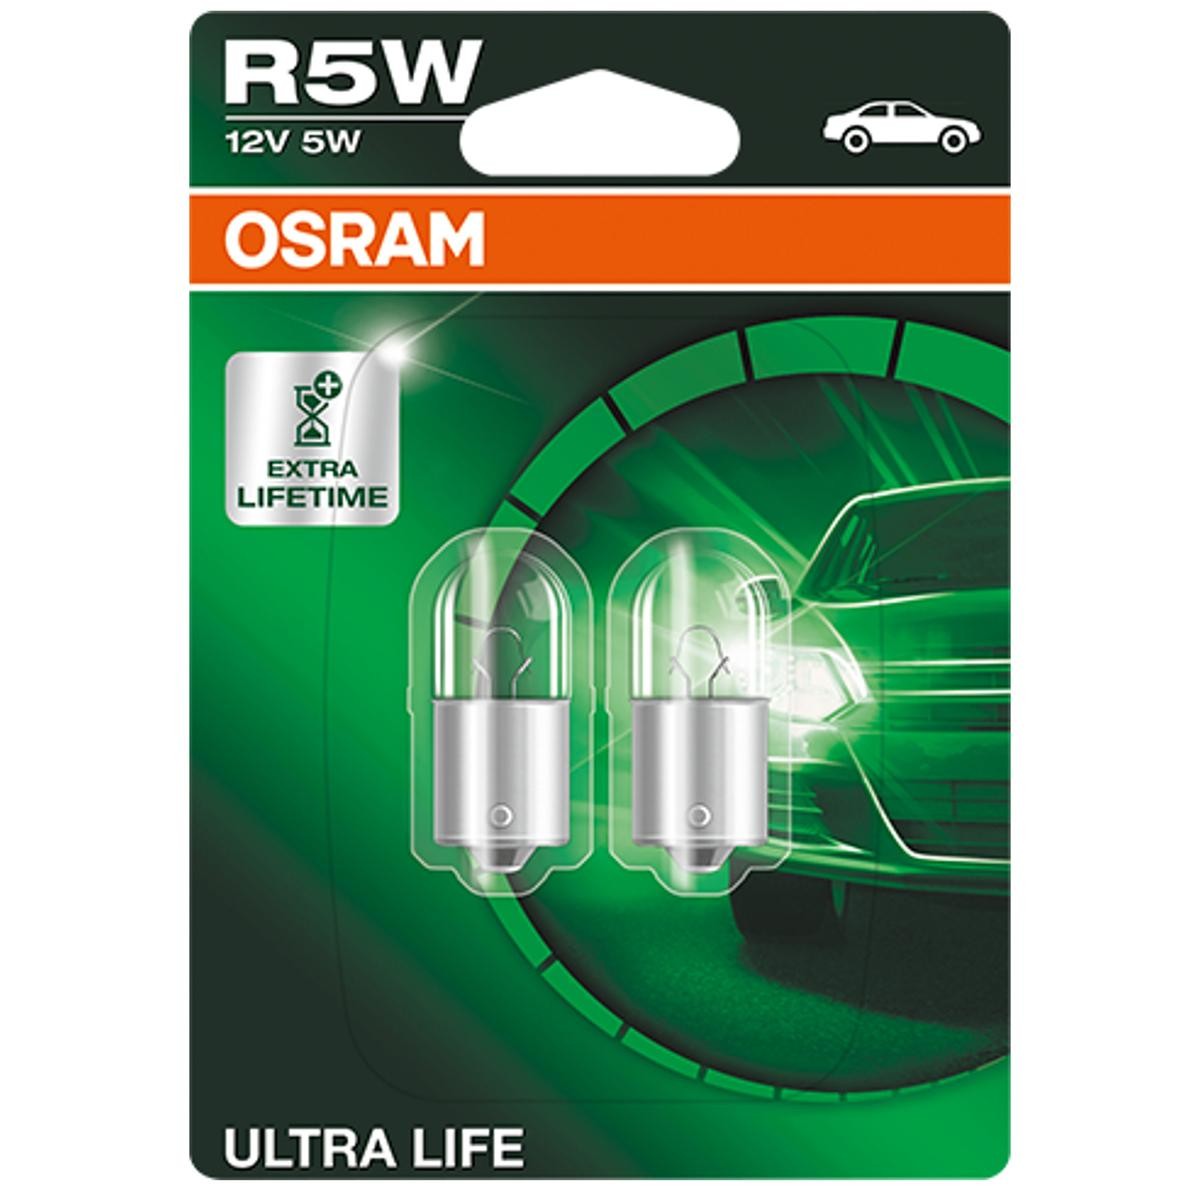 5007ULT-02B OSRAM ULTRA LIFE R5W Ampoule, feu clignotant 12V 5W, R5W R5W  ❱❱❱ prix et expérience